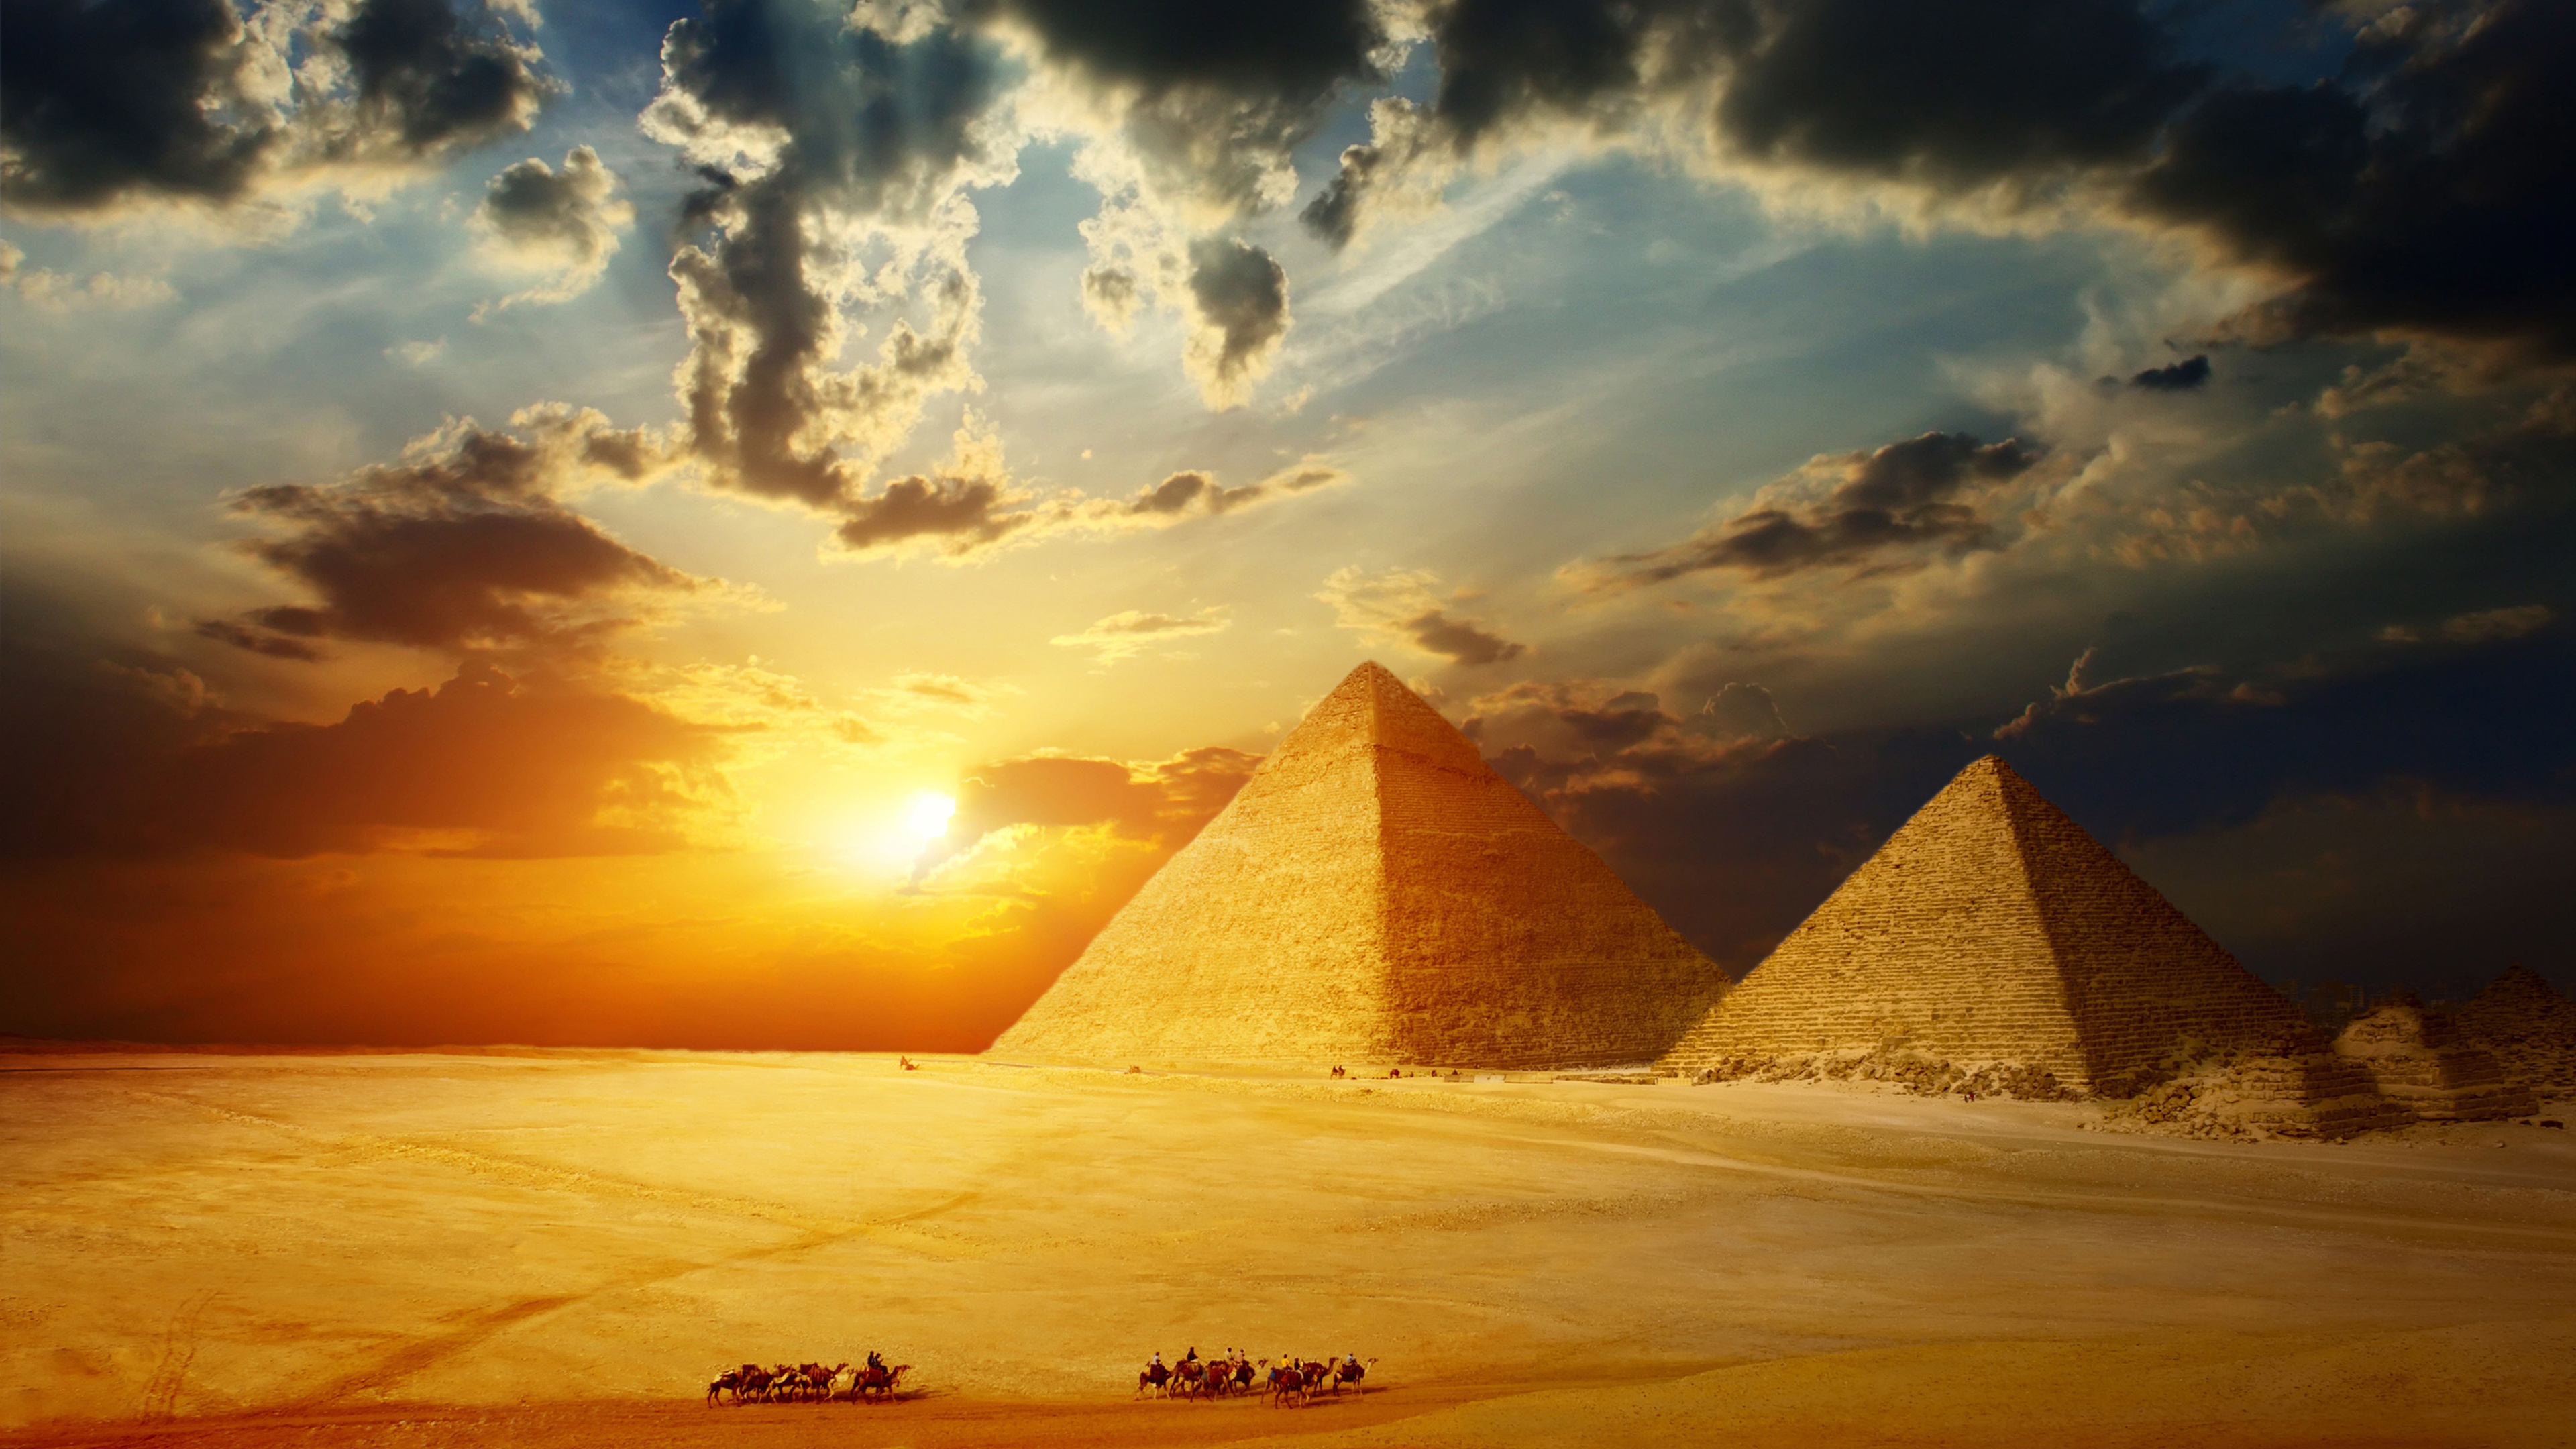 开罗, 埃及金字塔, 金字塔, 里程碑, 纪念碑 壁纸 3840x2160 允许